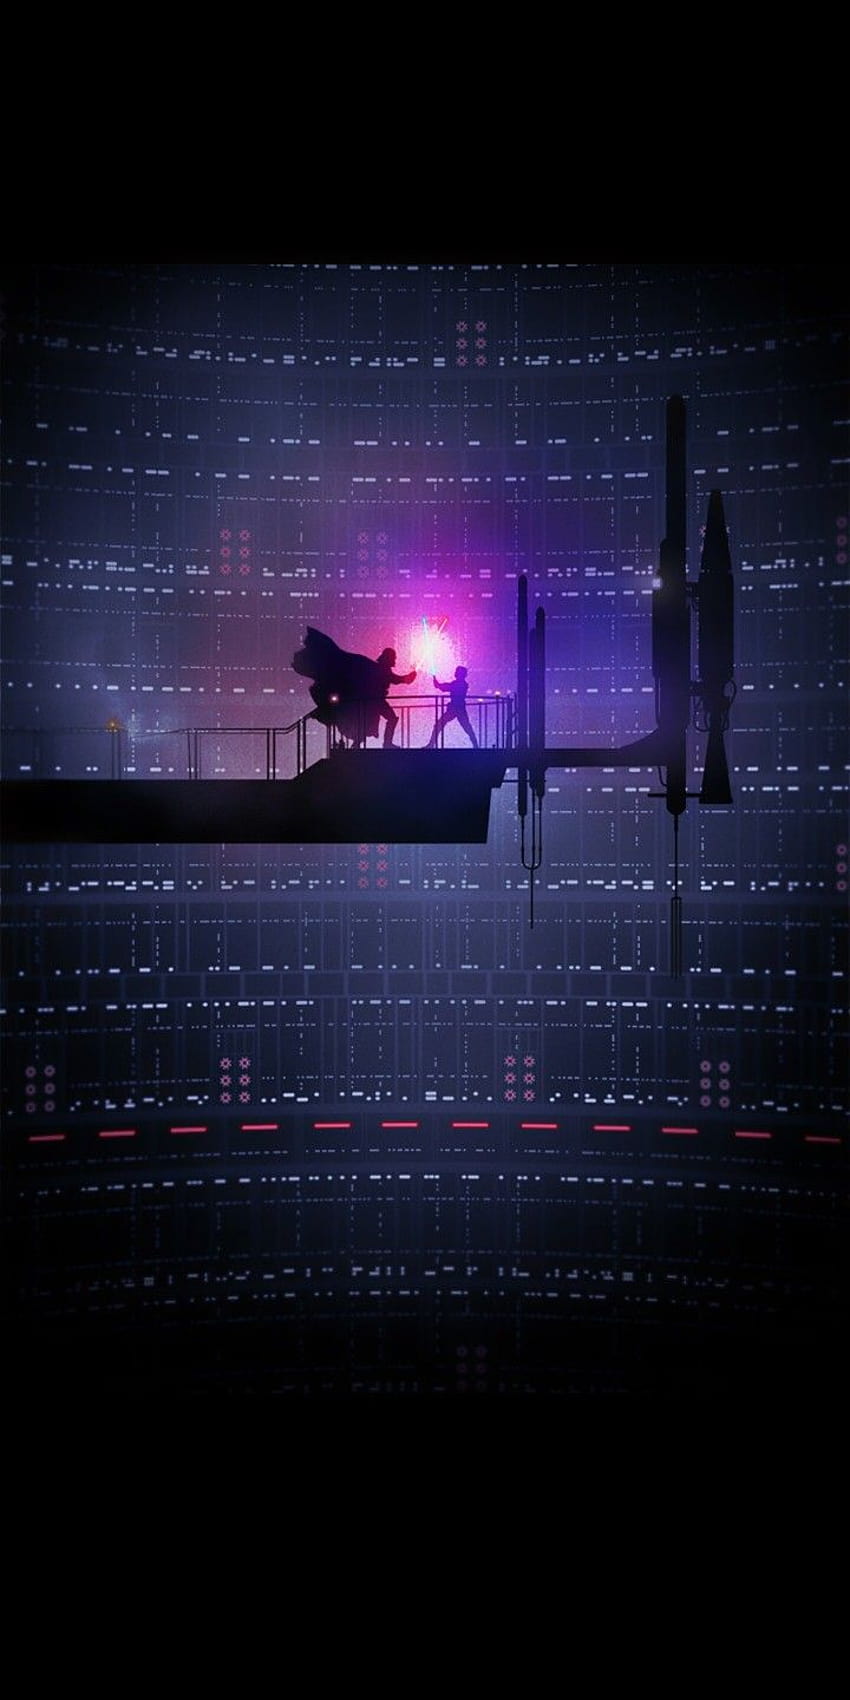 Star Wars ESB Bespin Lightsaber Duel por Marco Manev. 18:9, luke skywalker vs darth vader silueta fondo de pantalla del teléfono